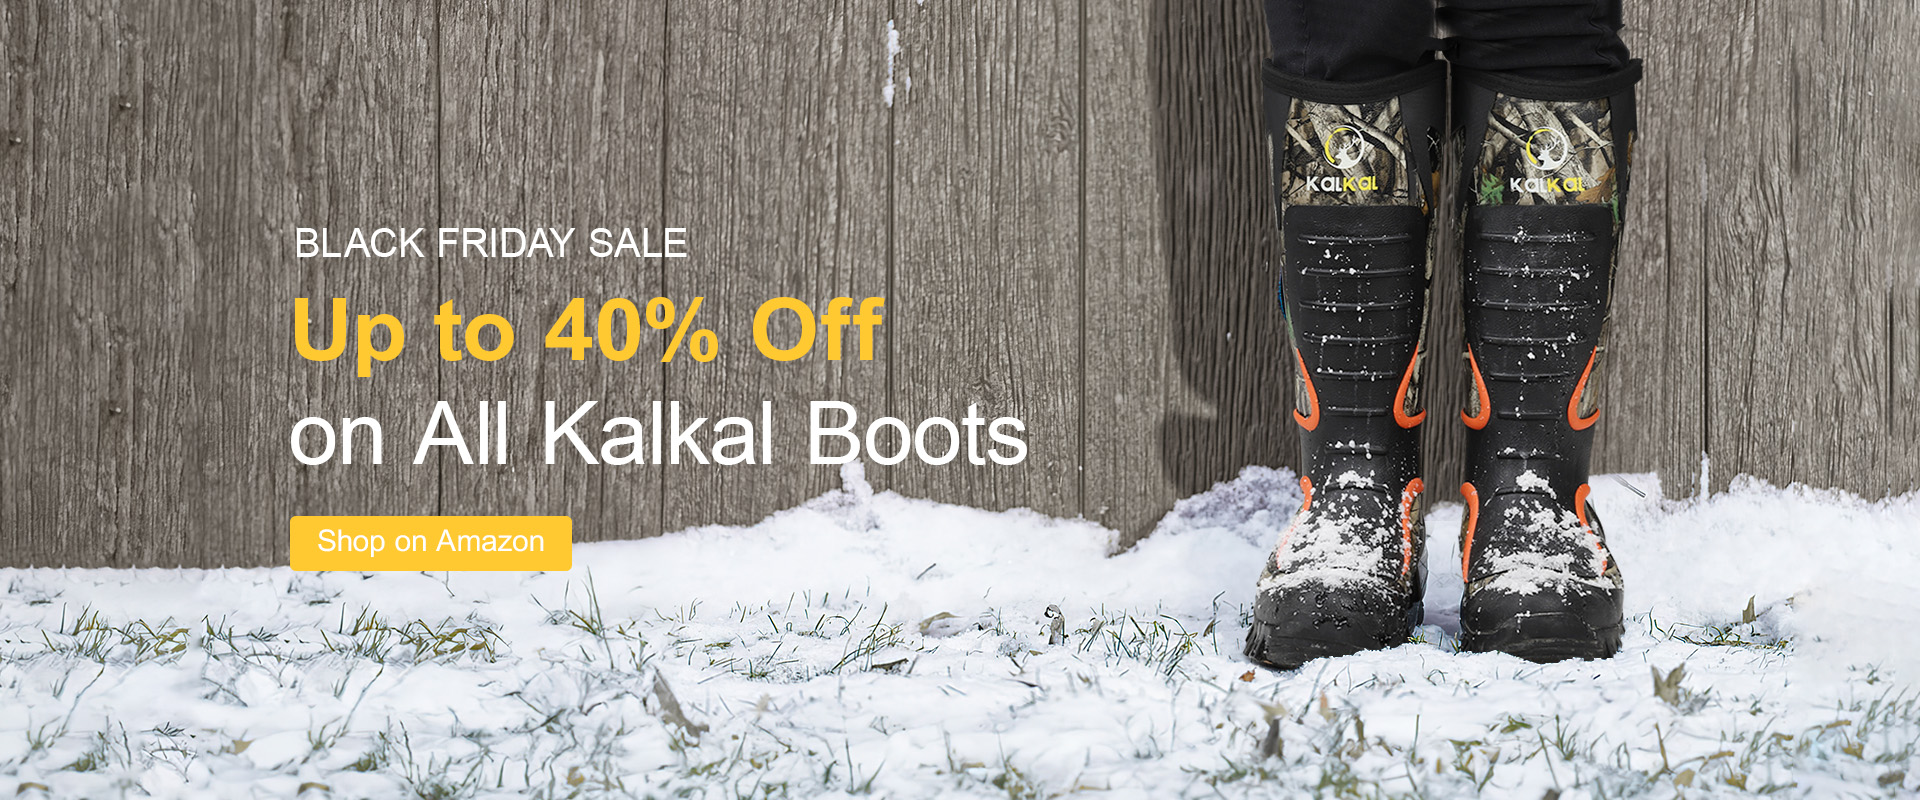 kalkal boots - black friday sale